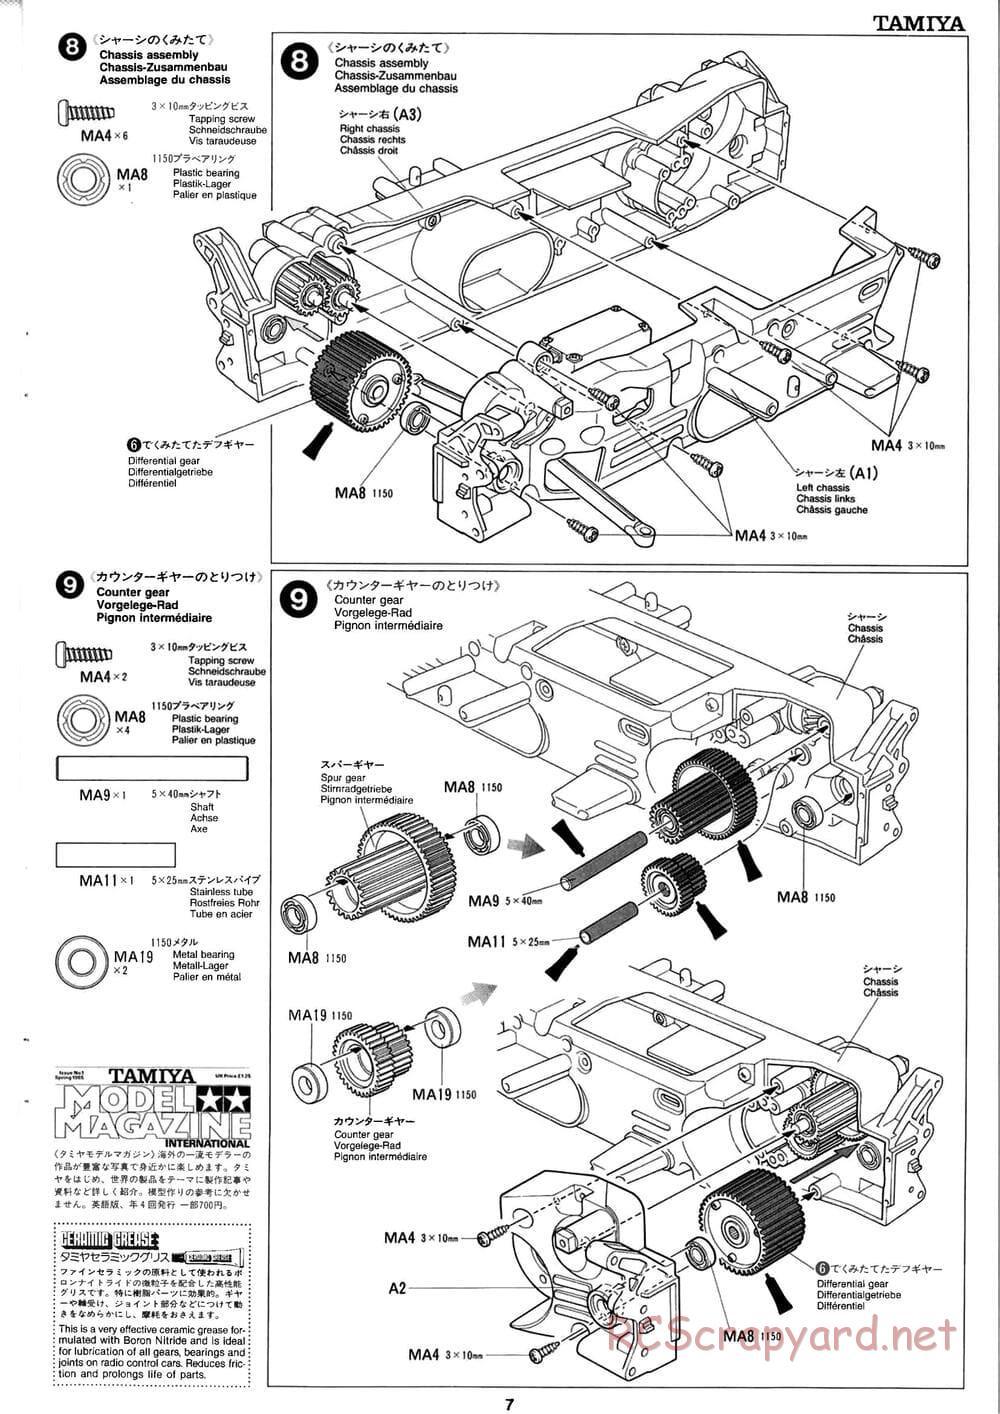 Tamiya - Baja Champ - TL-01B Chassis - Manual - Page 7